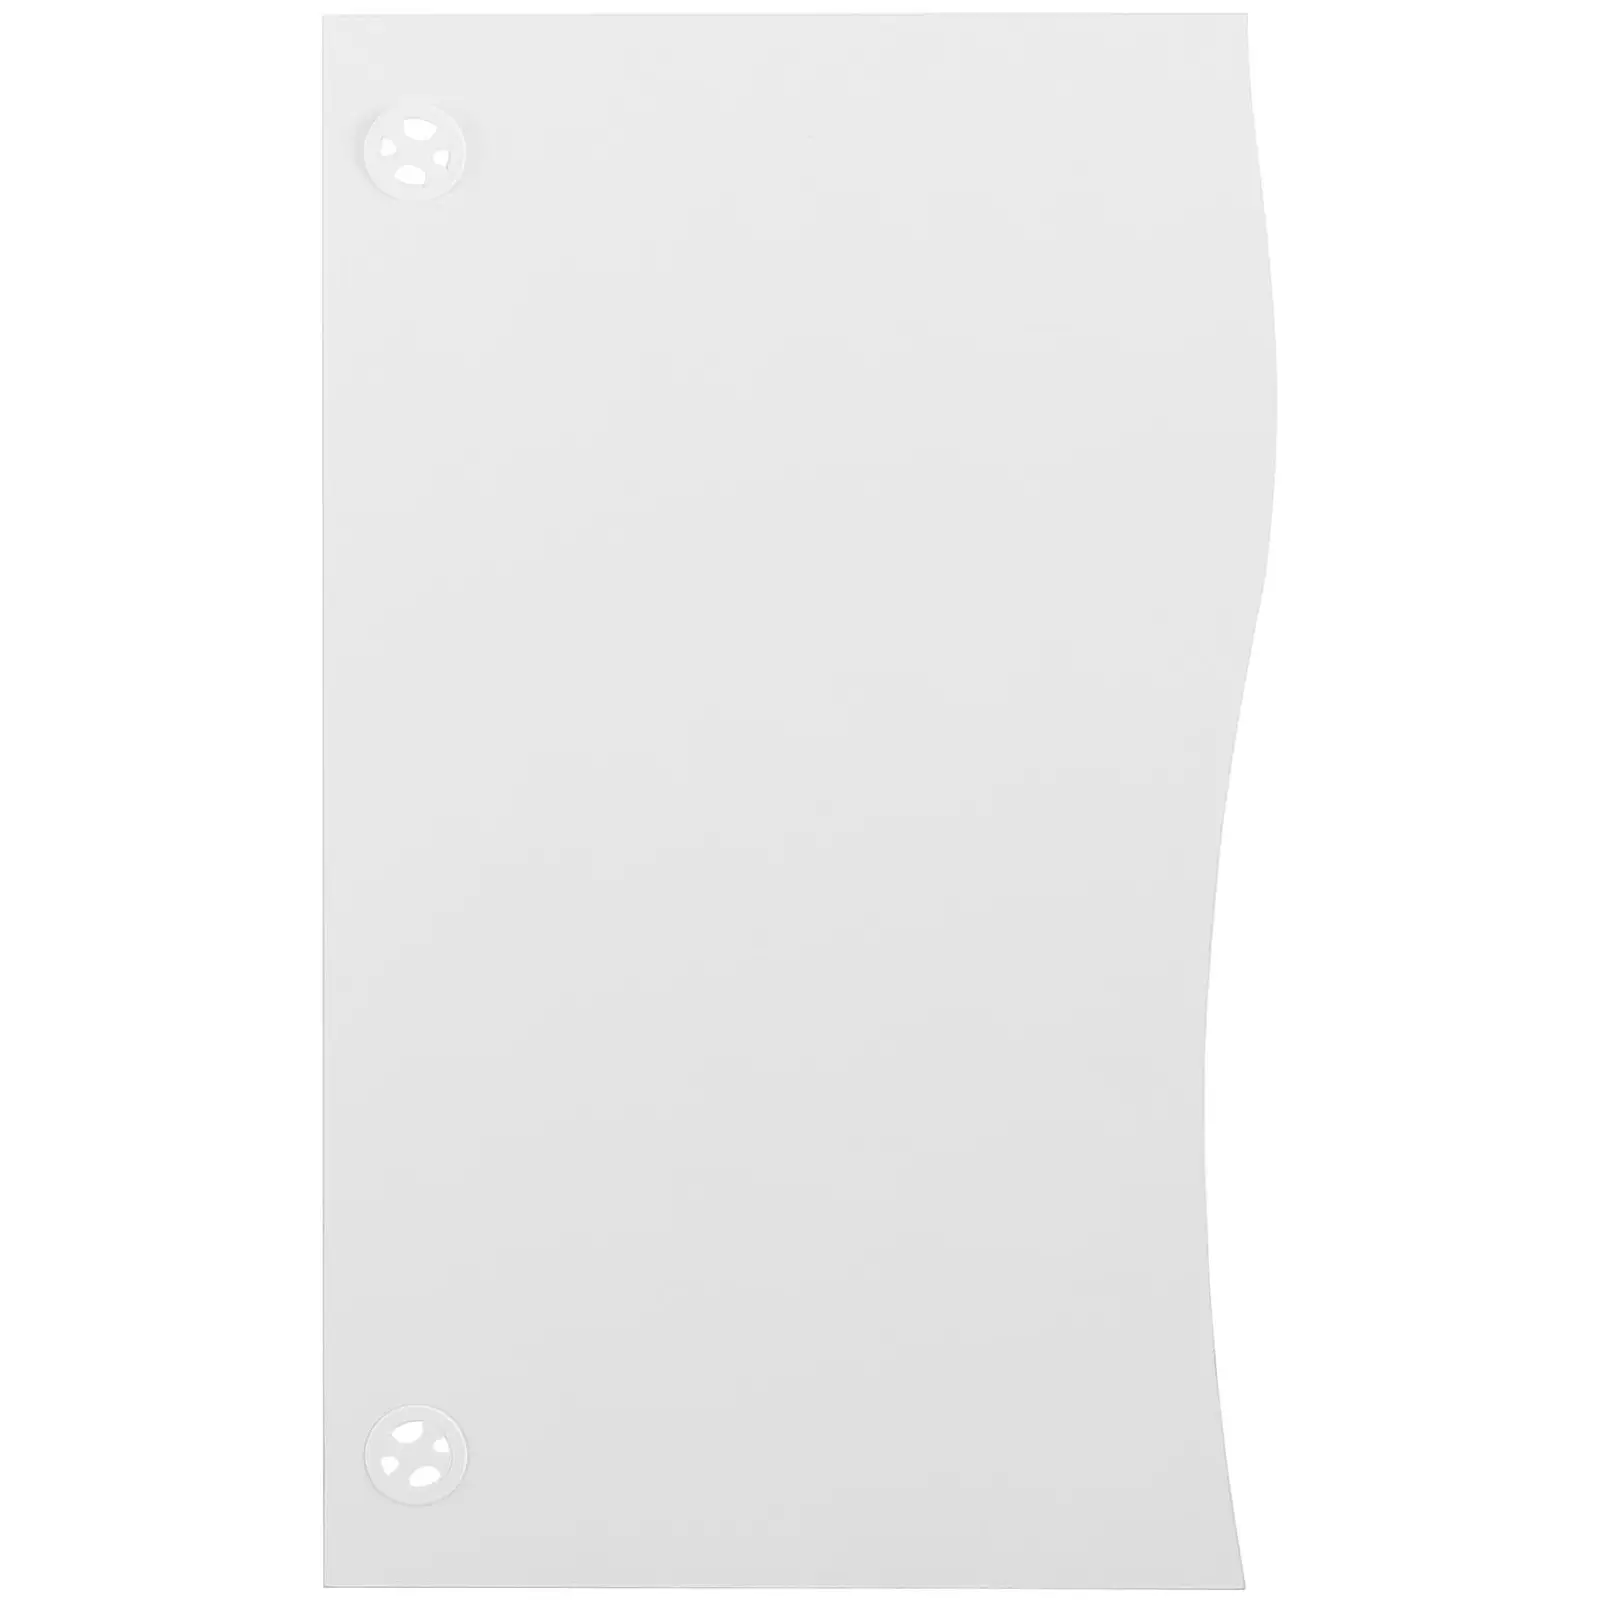 Toimistopöytä - 120 x 73 cm - valkoinen / harmaa